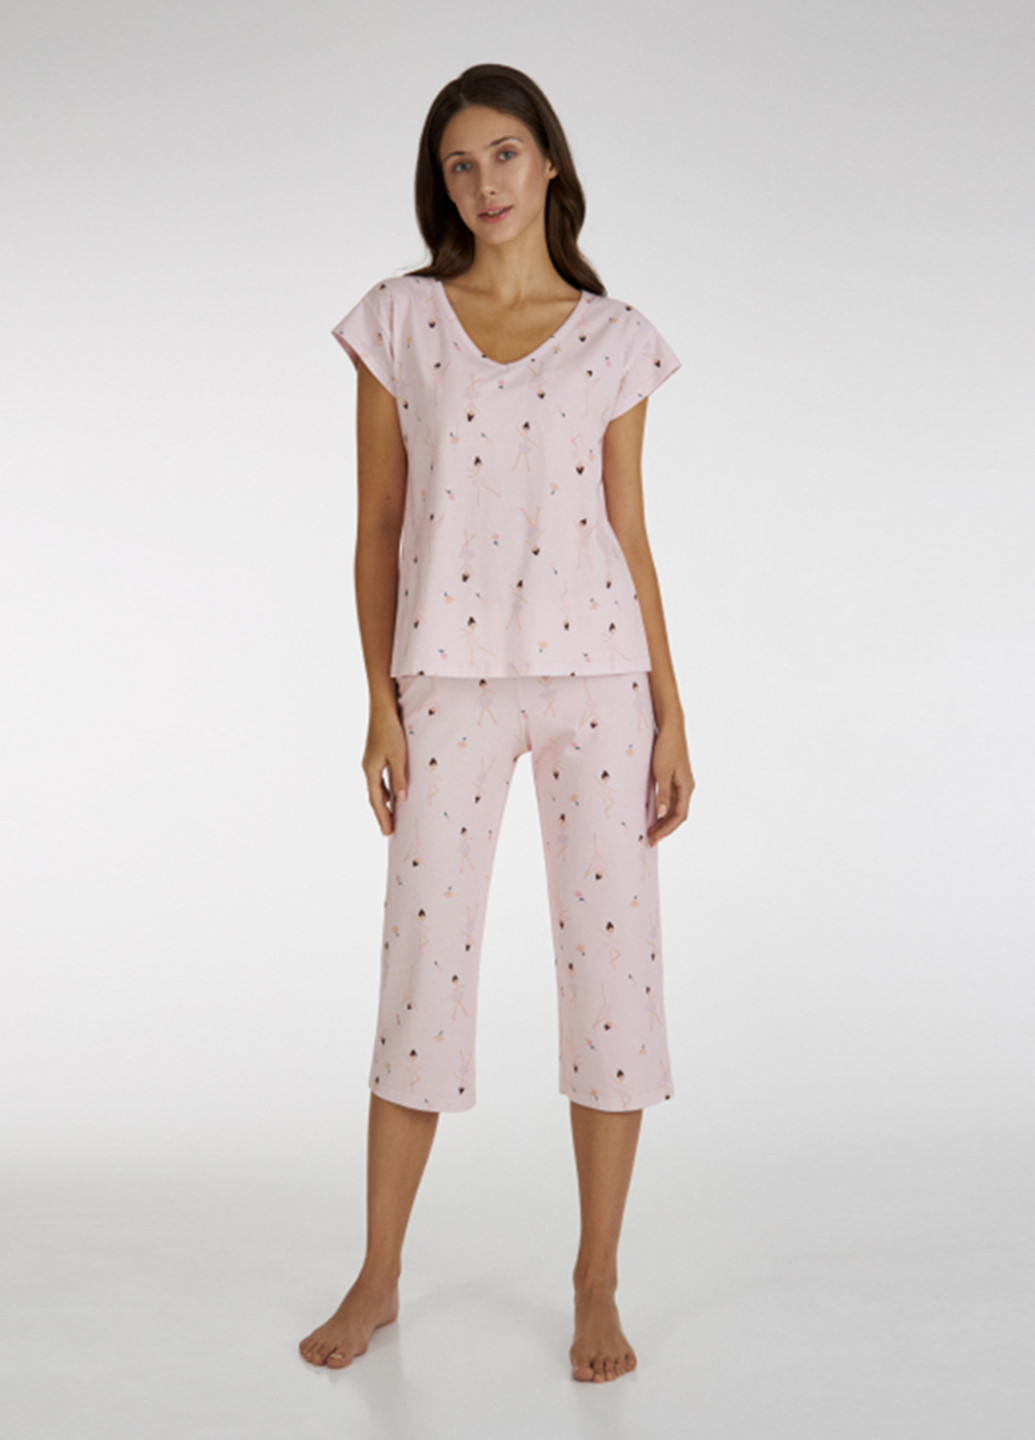 Светло-розовая всесезон пижама (футболка, капри) футболка + капри Ellen